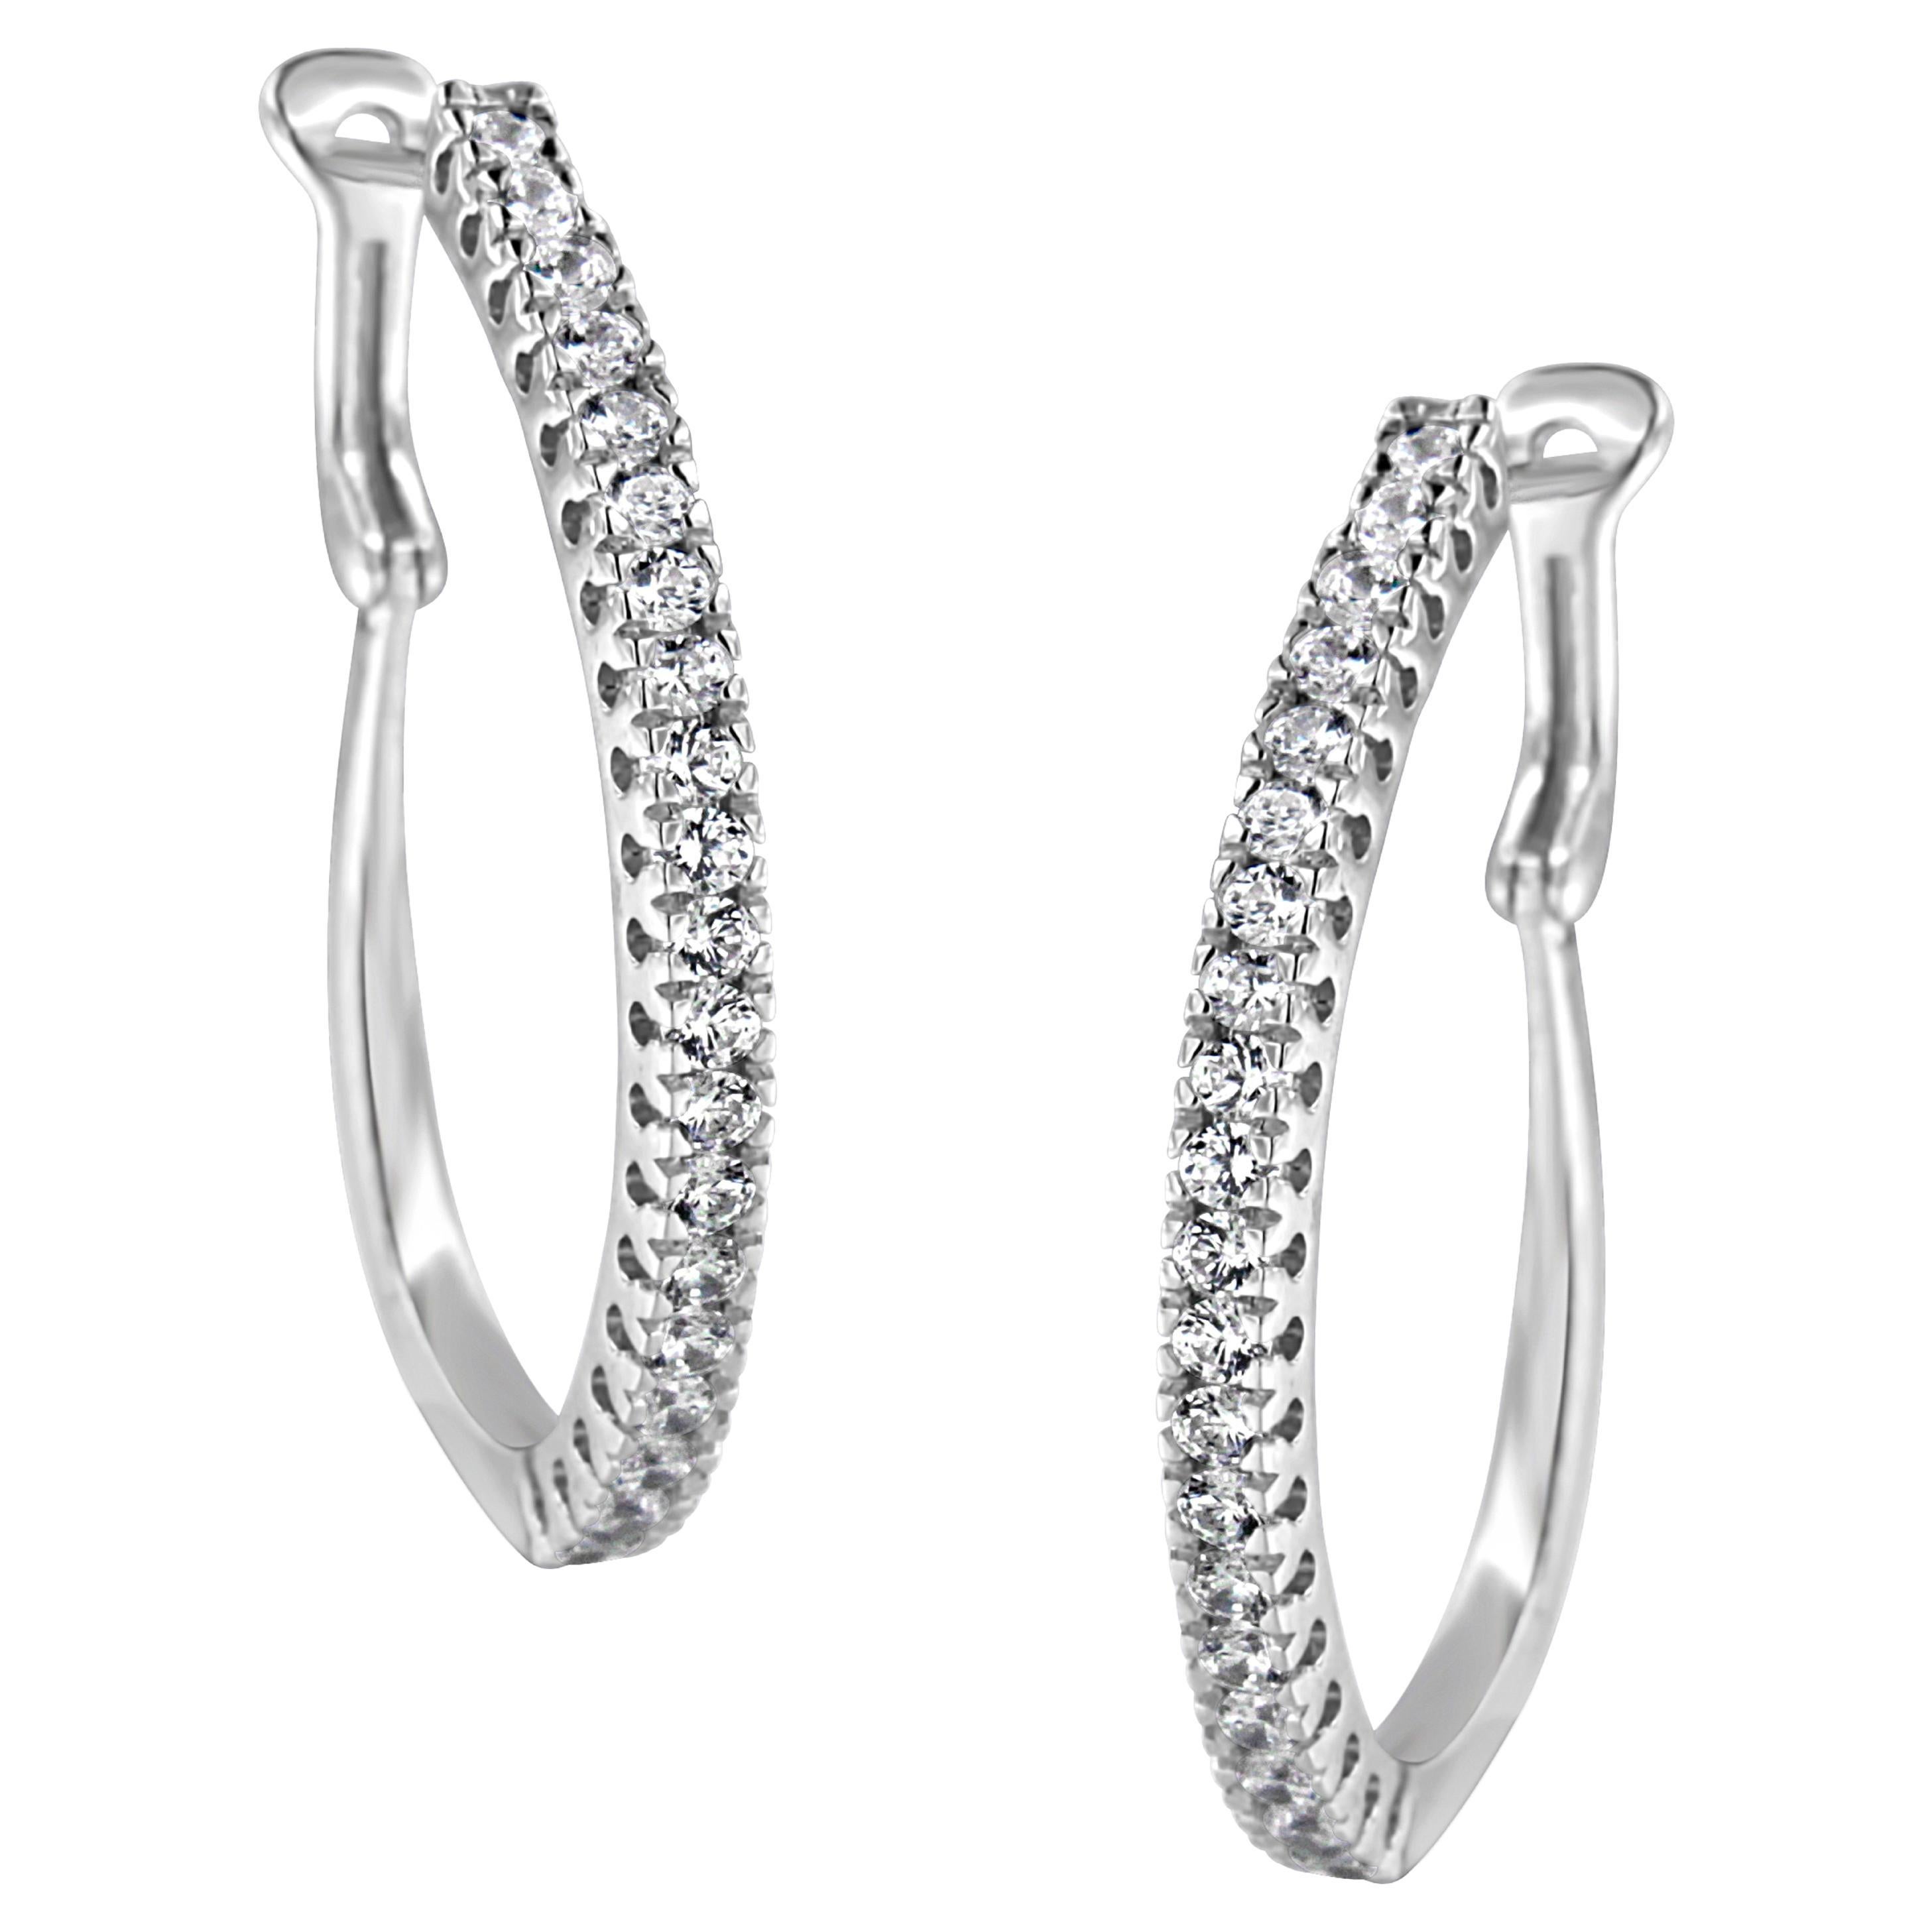 10Kt White Gold 1.0 Carat Diamond Hoop Earrings For Sale